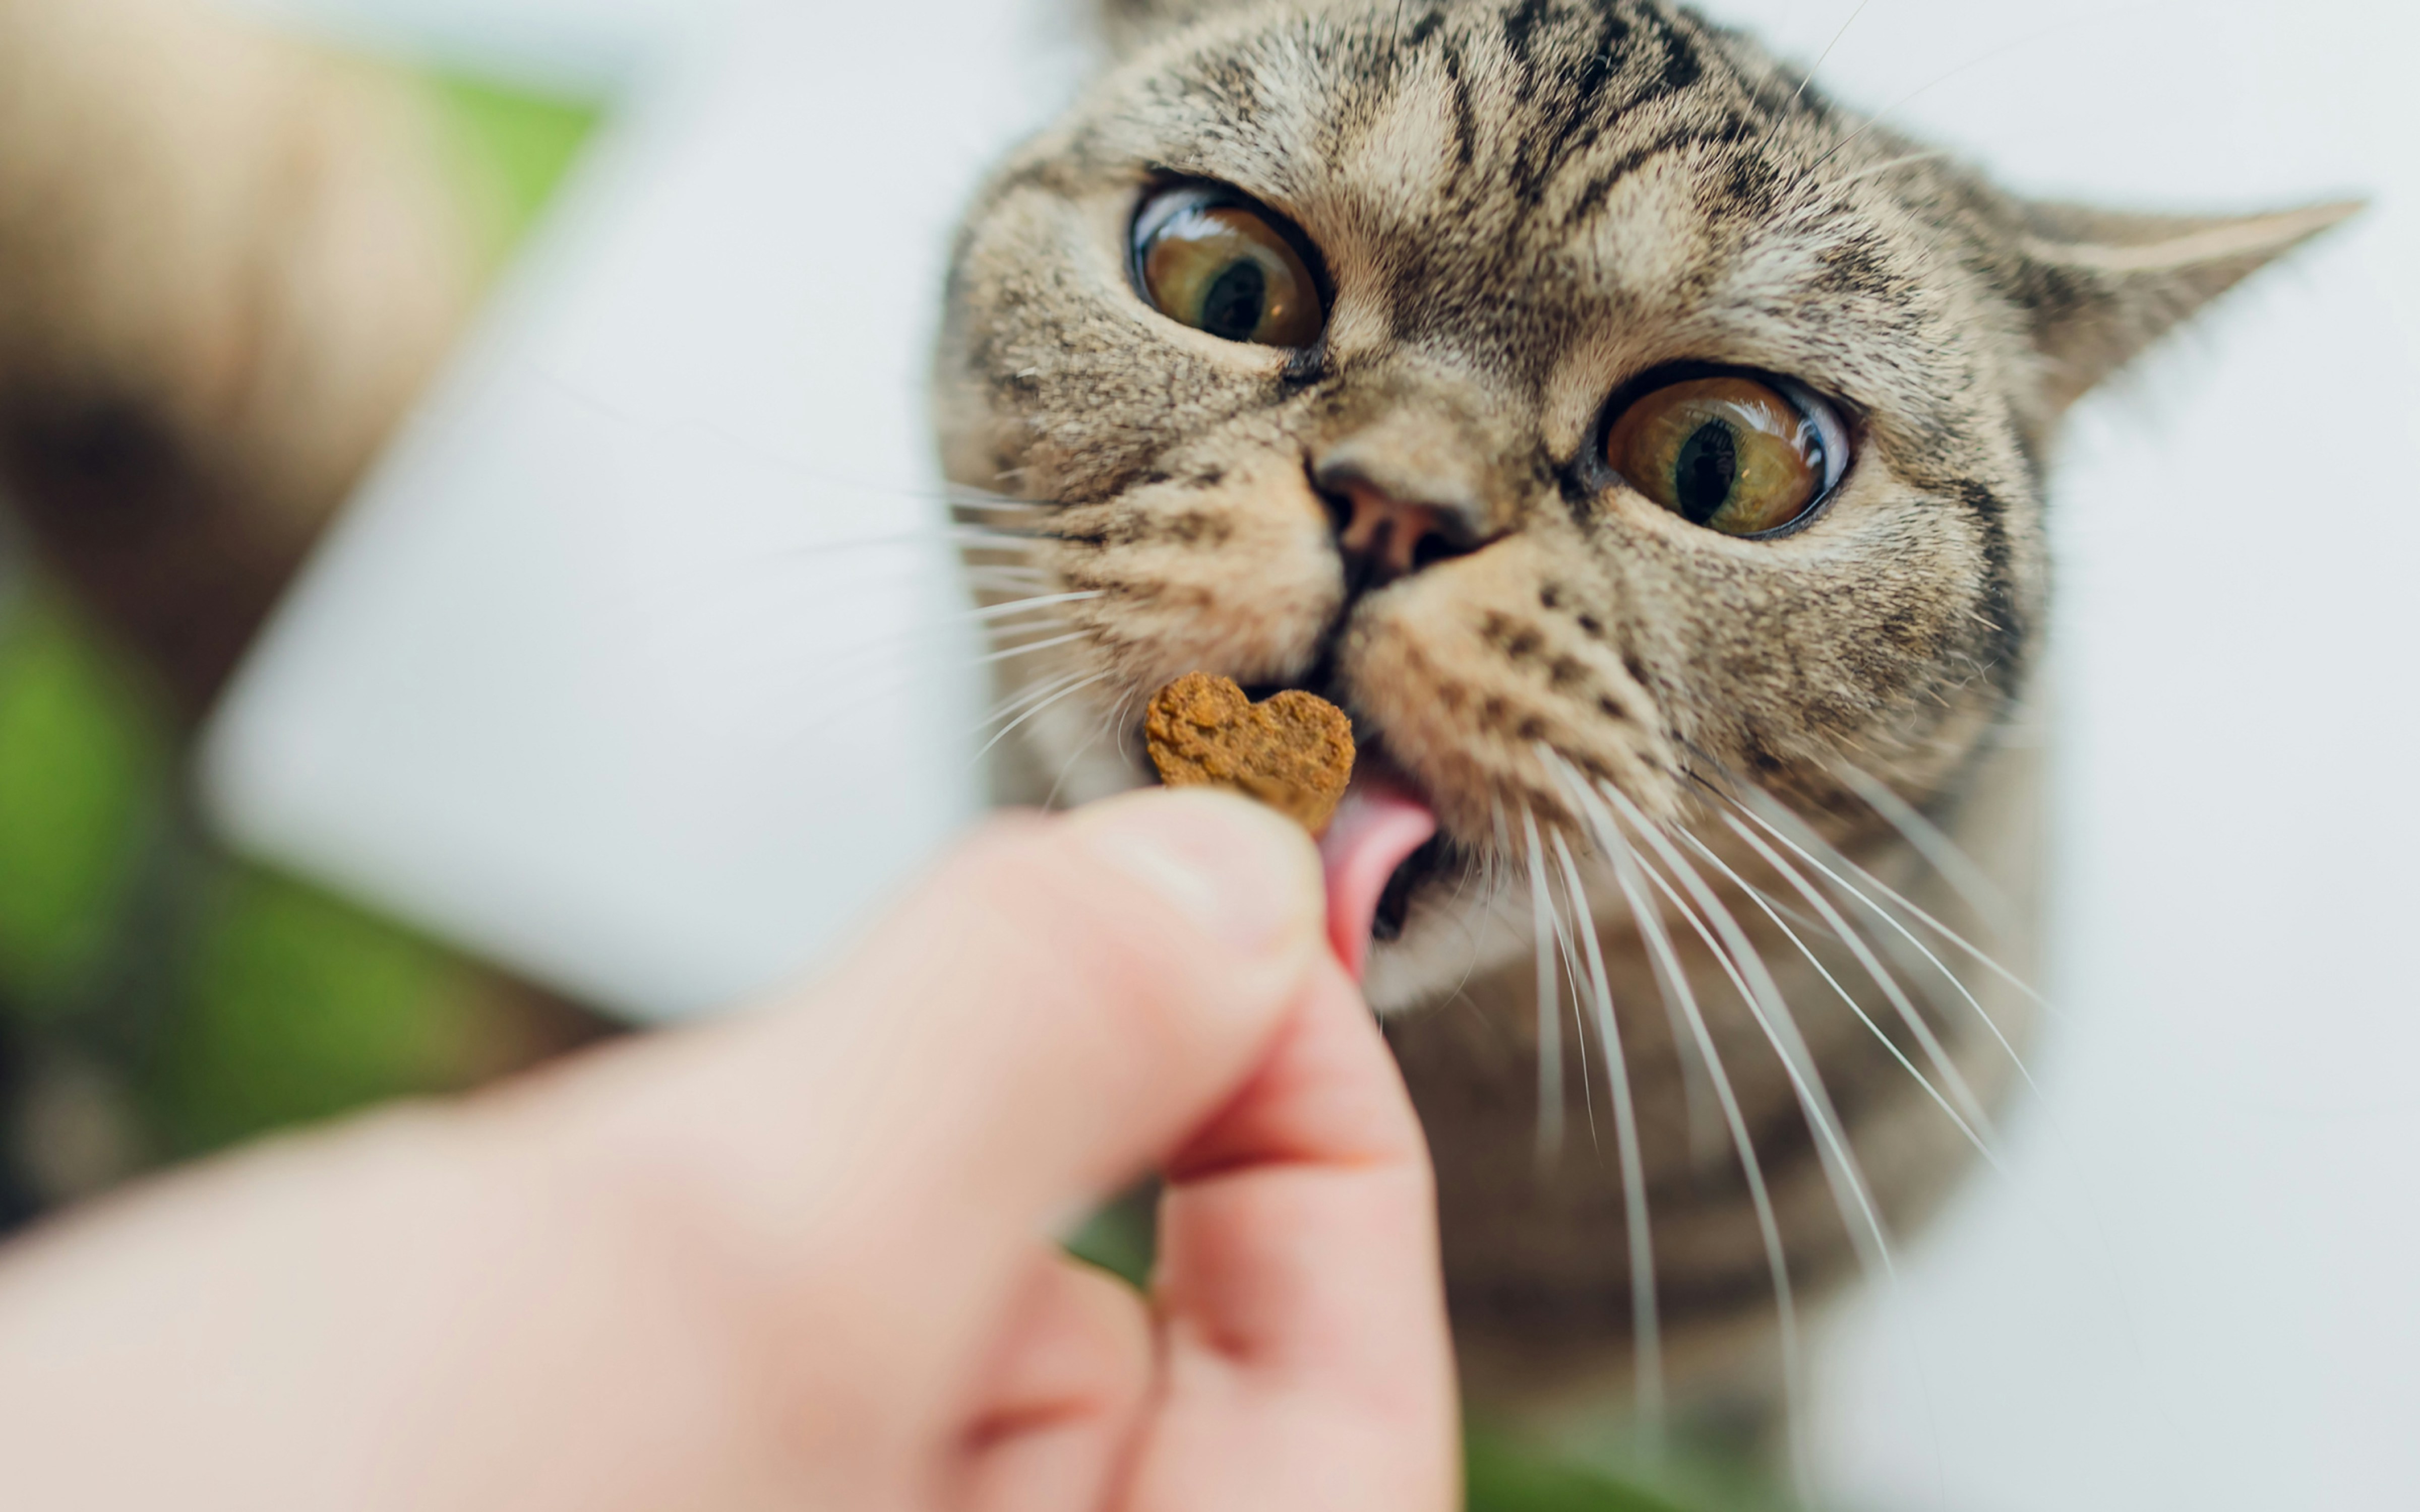 Cat enjoying bug bites